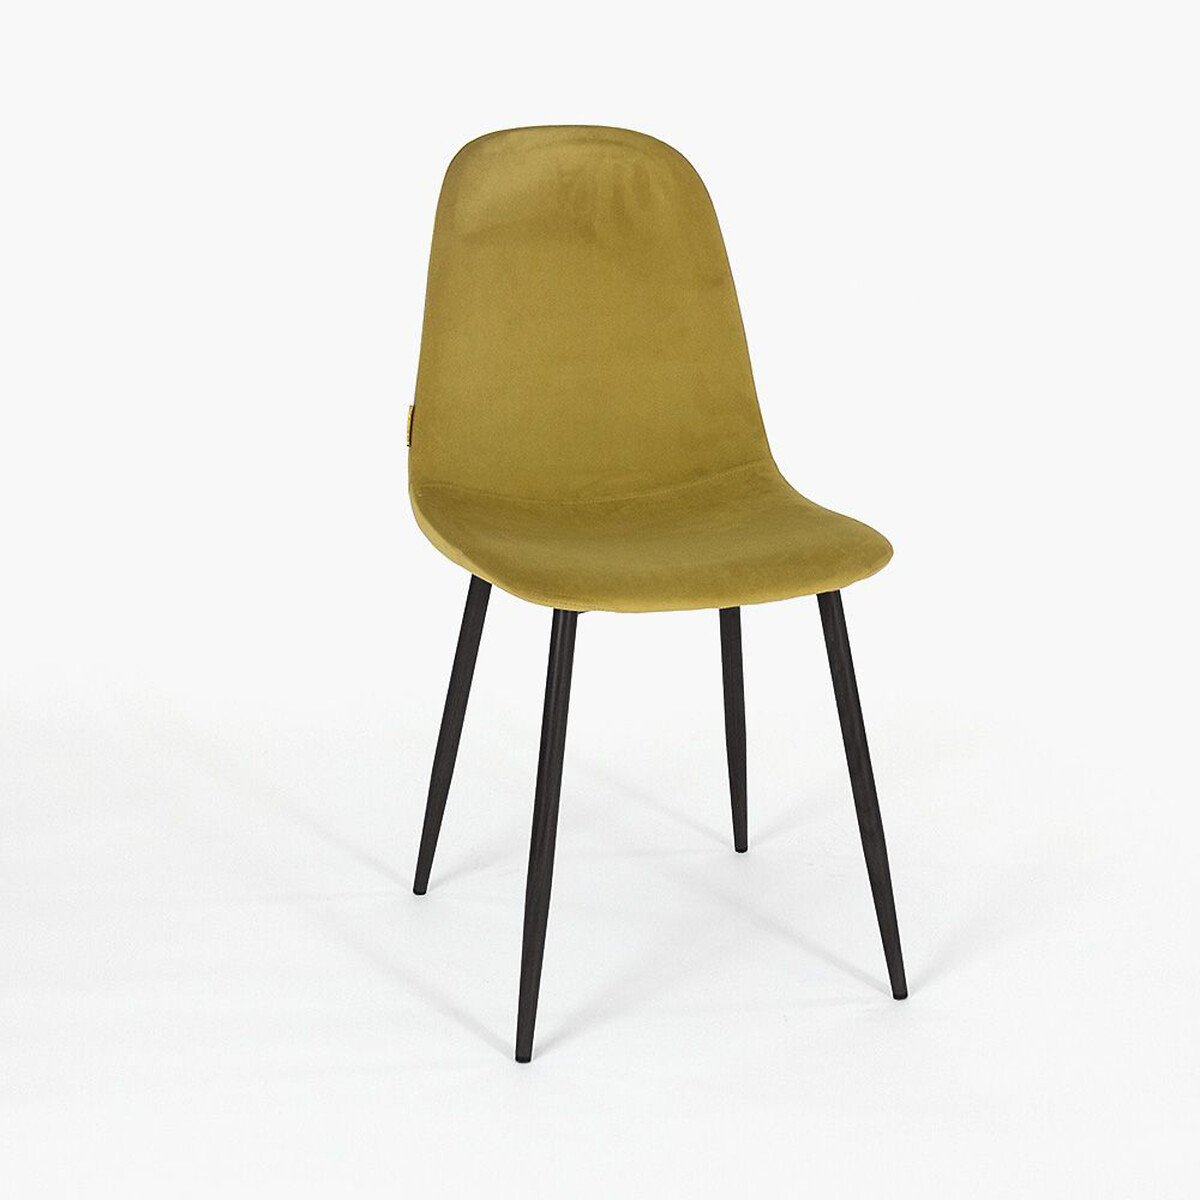 Стул Копенгаген единый размер желтый стул копенгаген единый размер серый